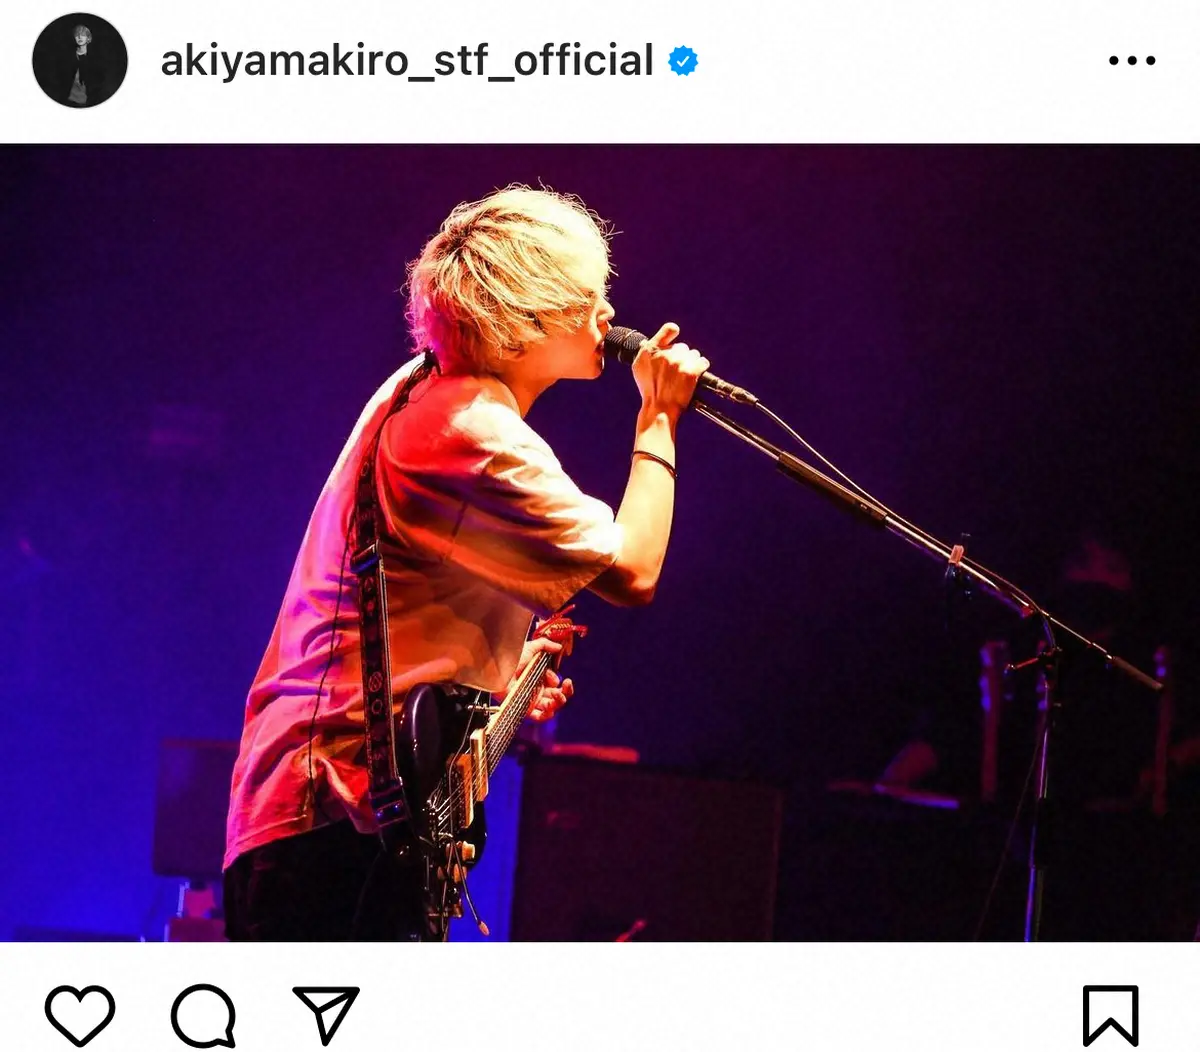 秋山黄色「逃げずに、必ず戻ってきます」　騒動後初コメントで謝罪、年内ライブは辞退へ